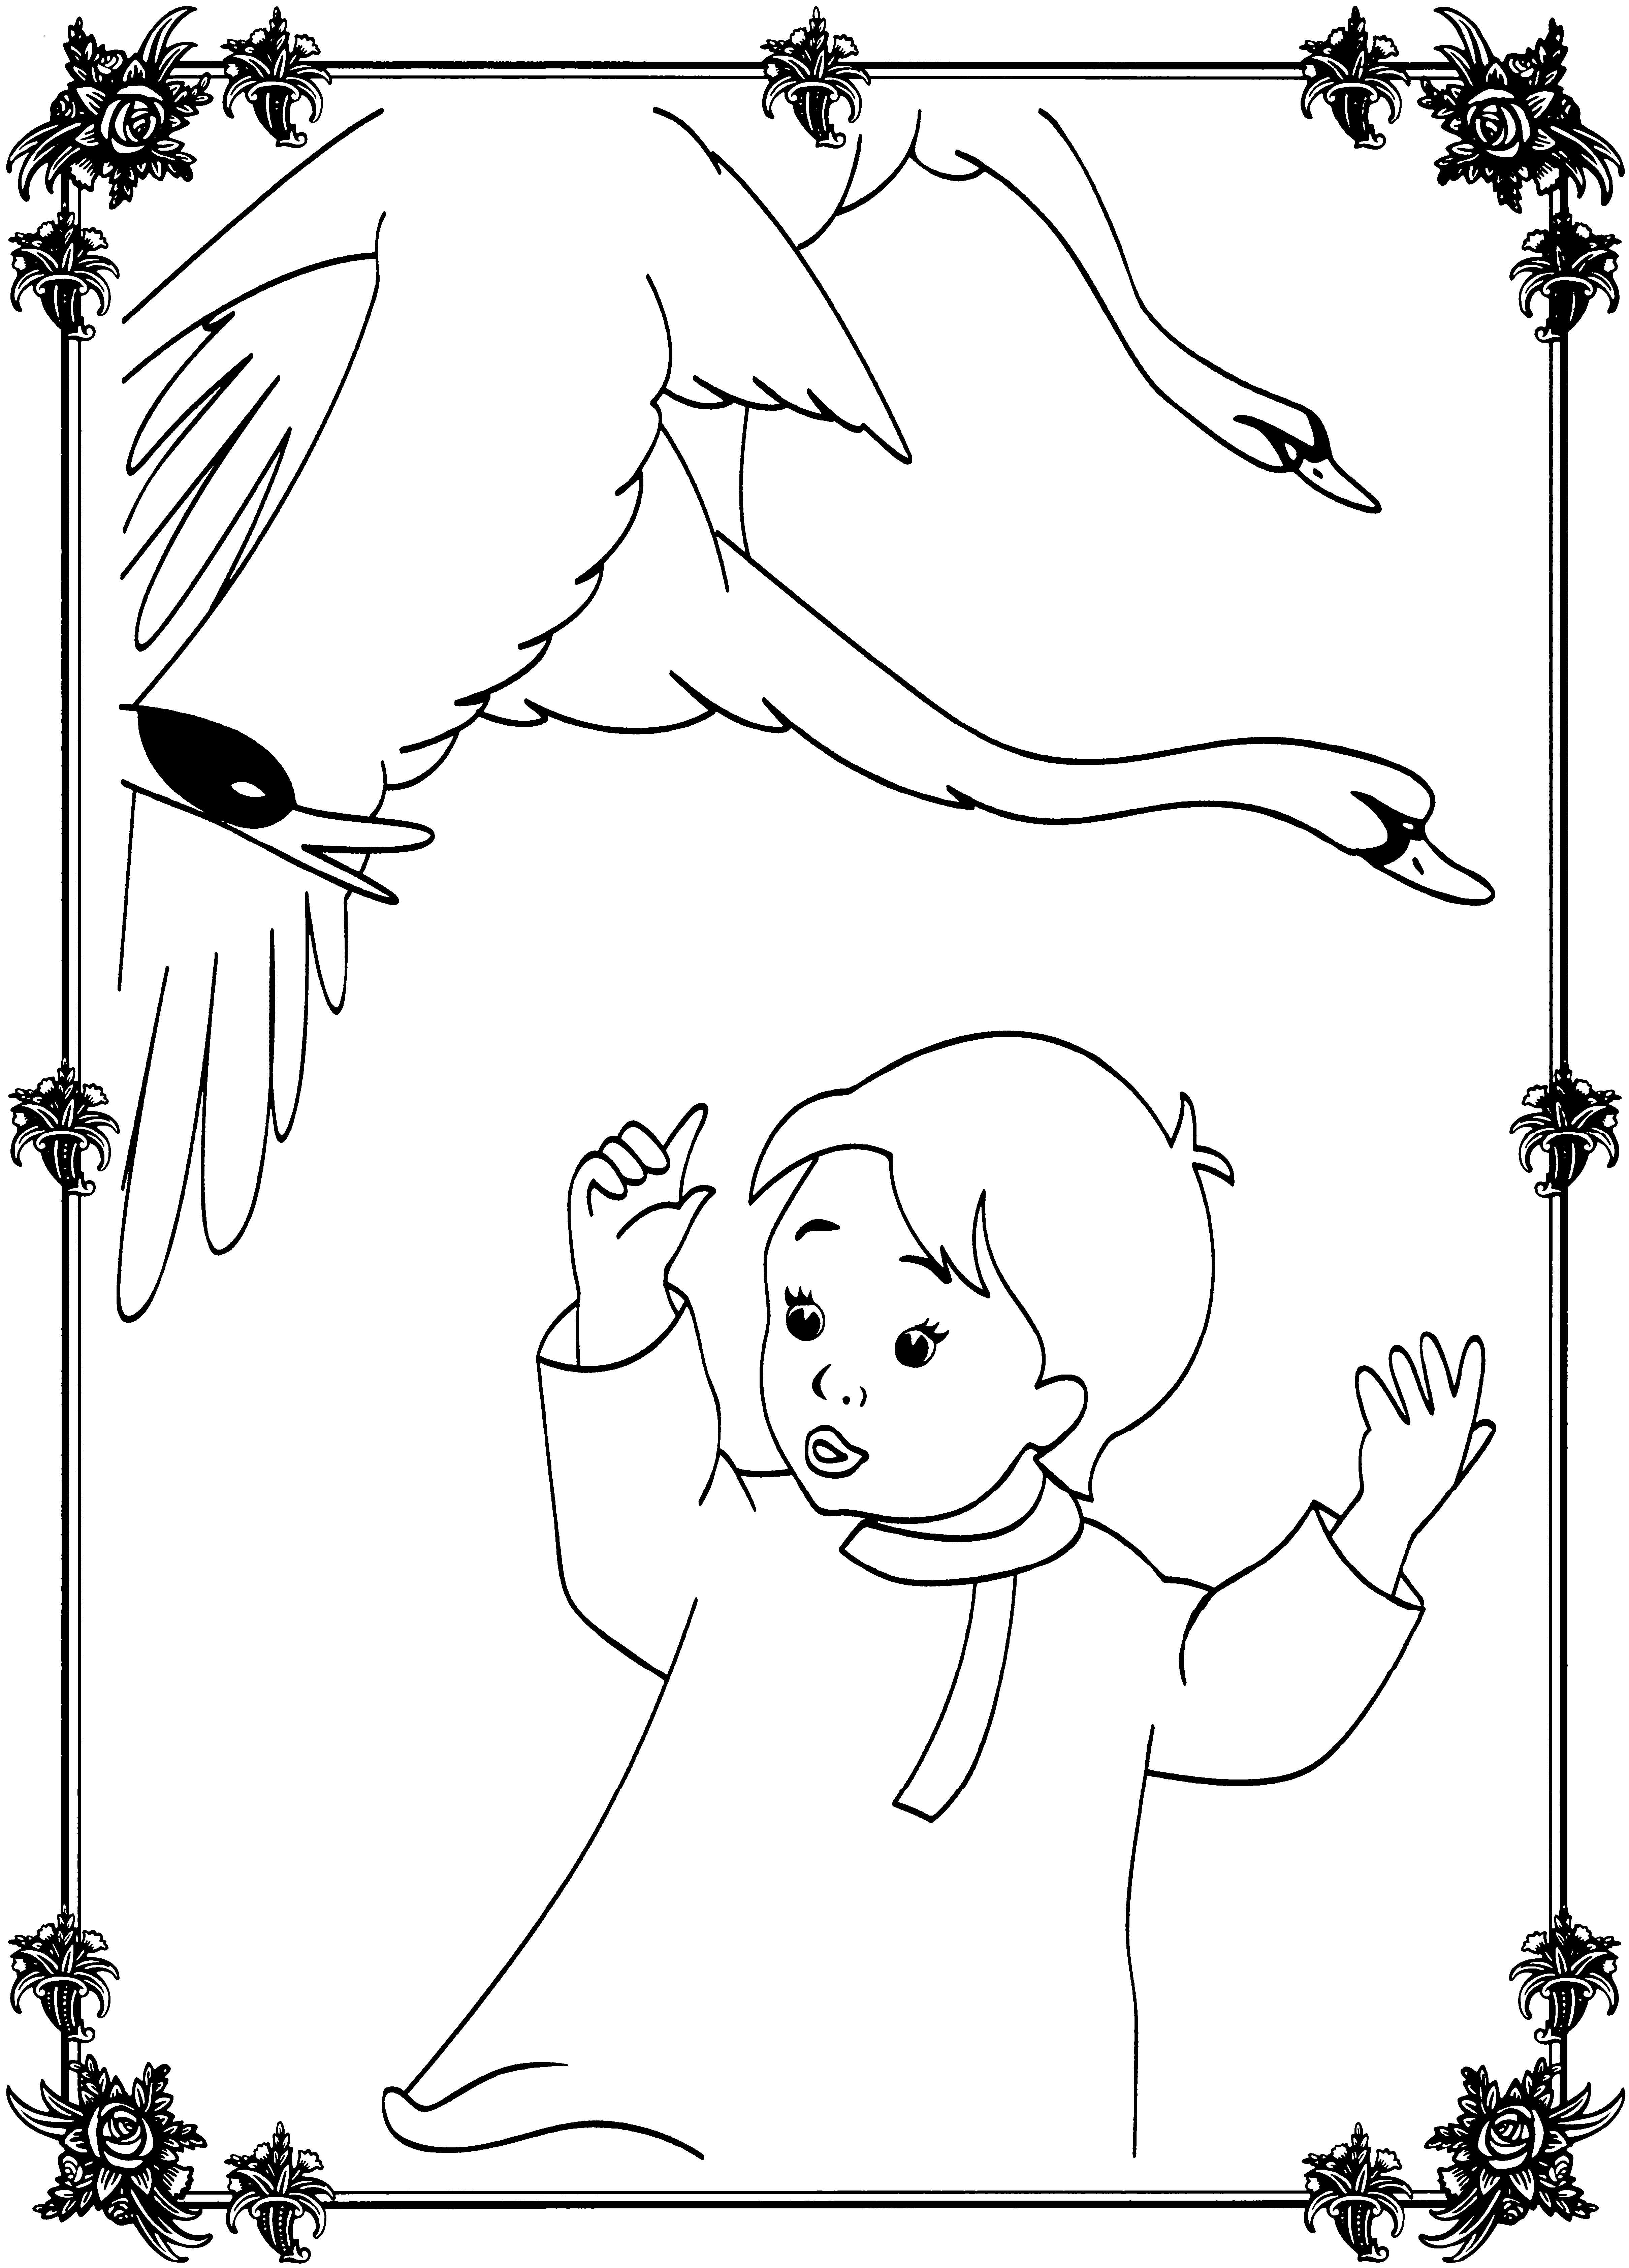 Иллюстрация к сказке гуси лебеди раскраска